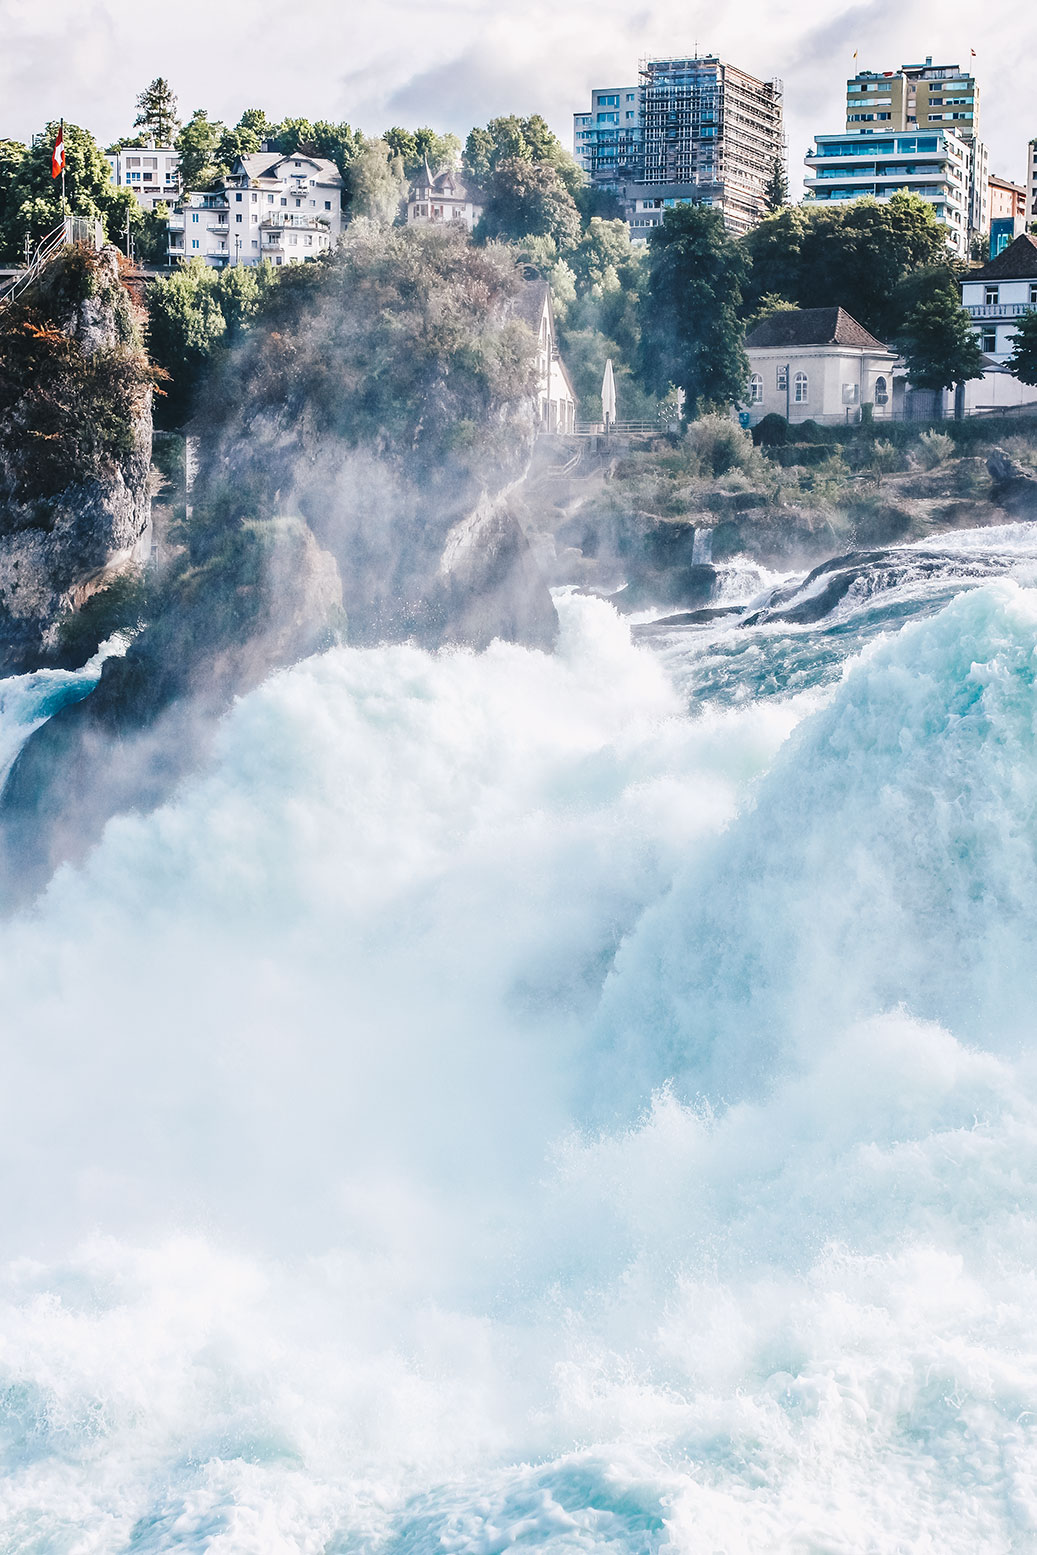 Rheinfall-Schweiz-größter-Wasserfall-Europas-Tagestrip